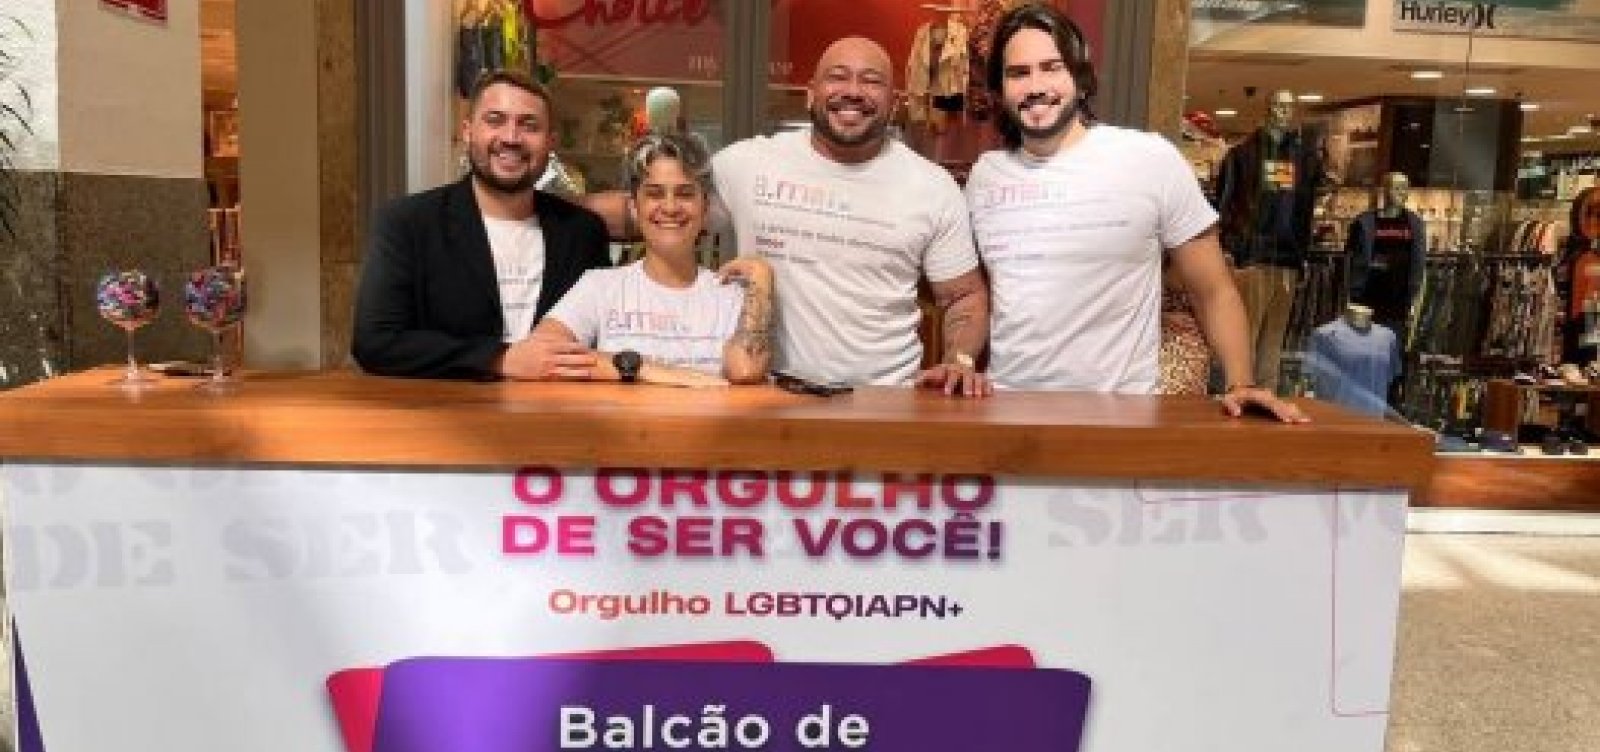 OAB e MP da Bahia oferecem assistência jurídica e retificação de registro civil para LGBT+